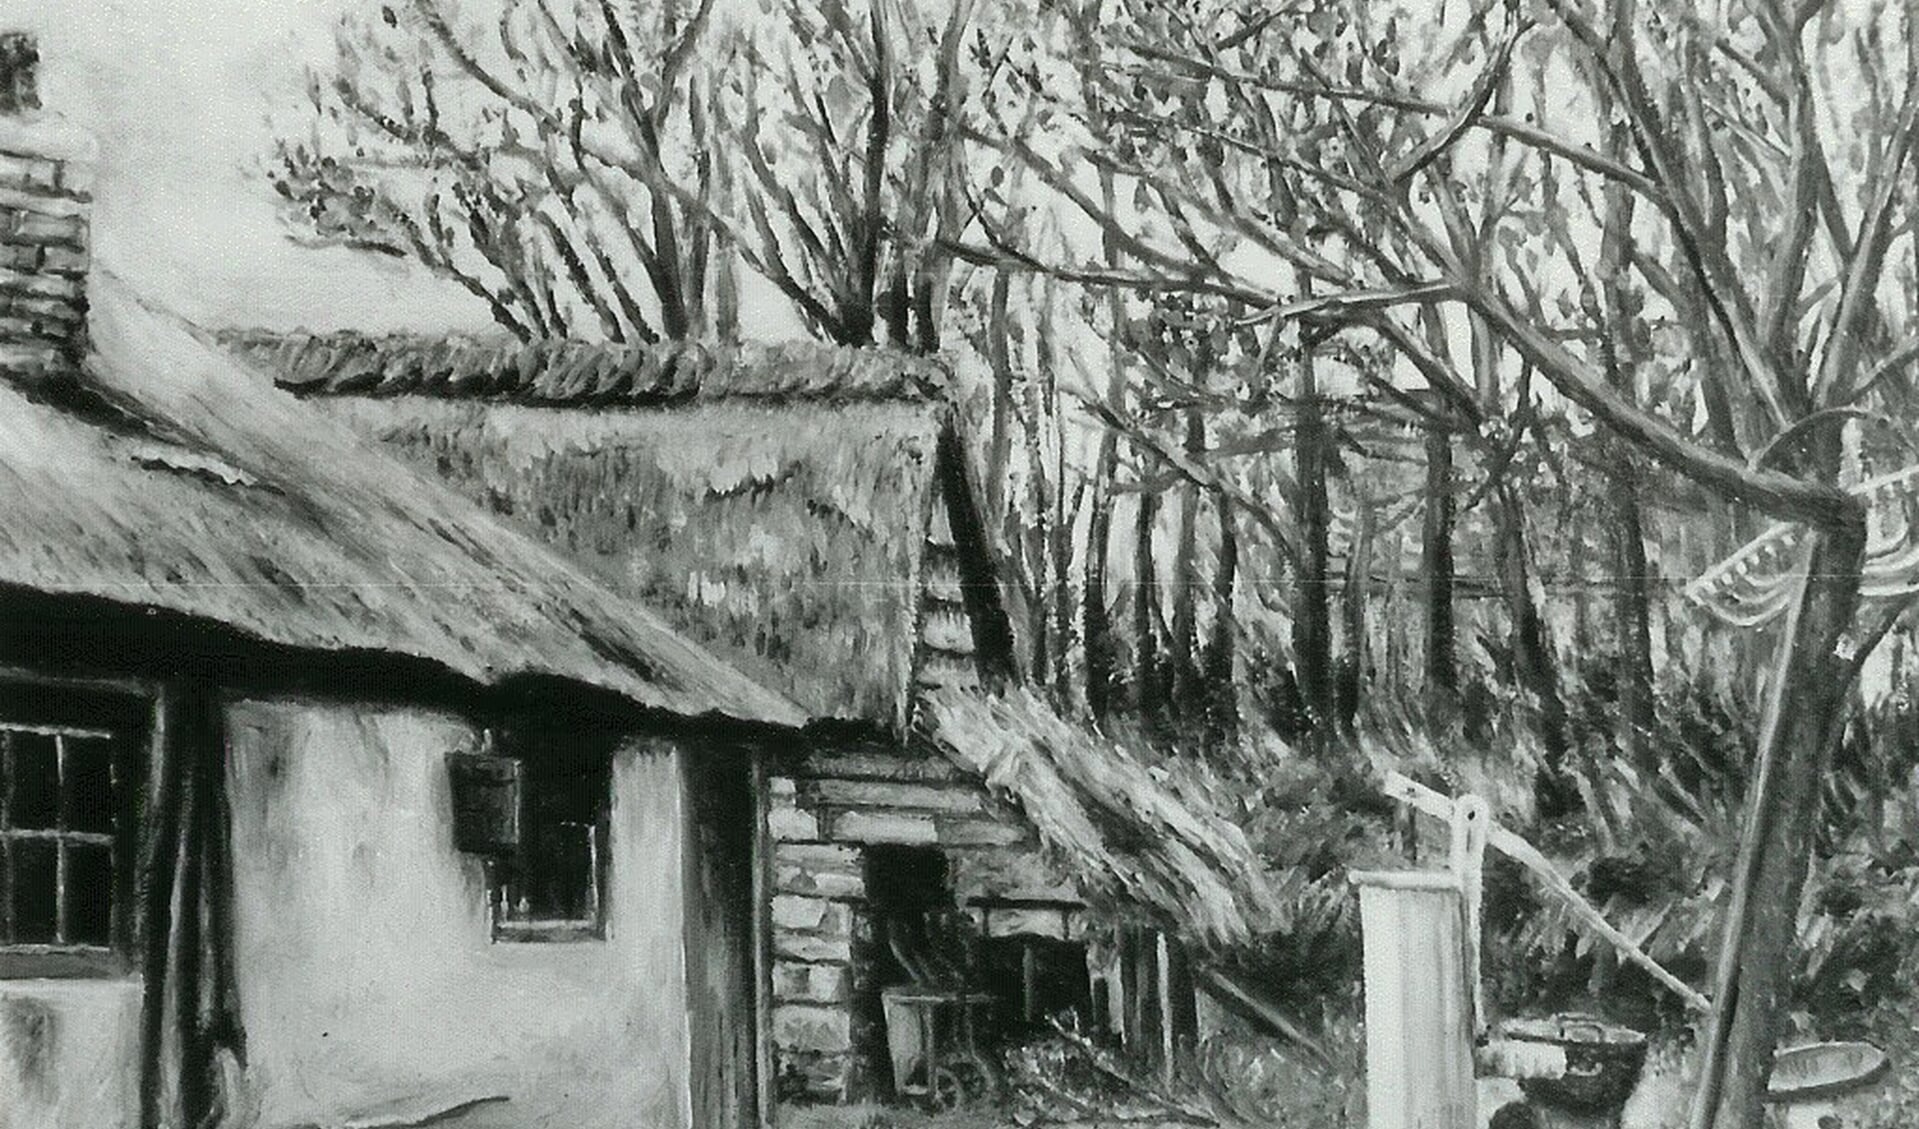 Schilderijtje van de achterzijde van de boerderij in 1895.
